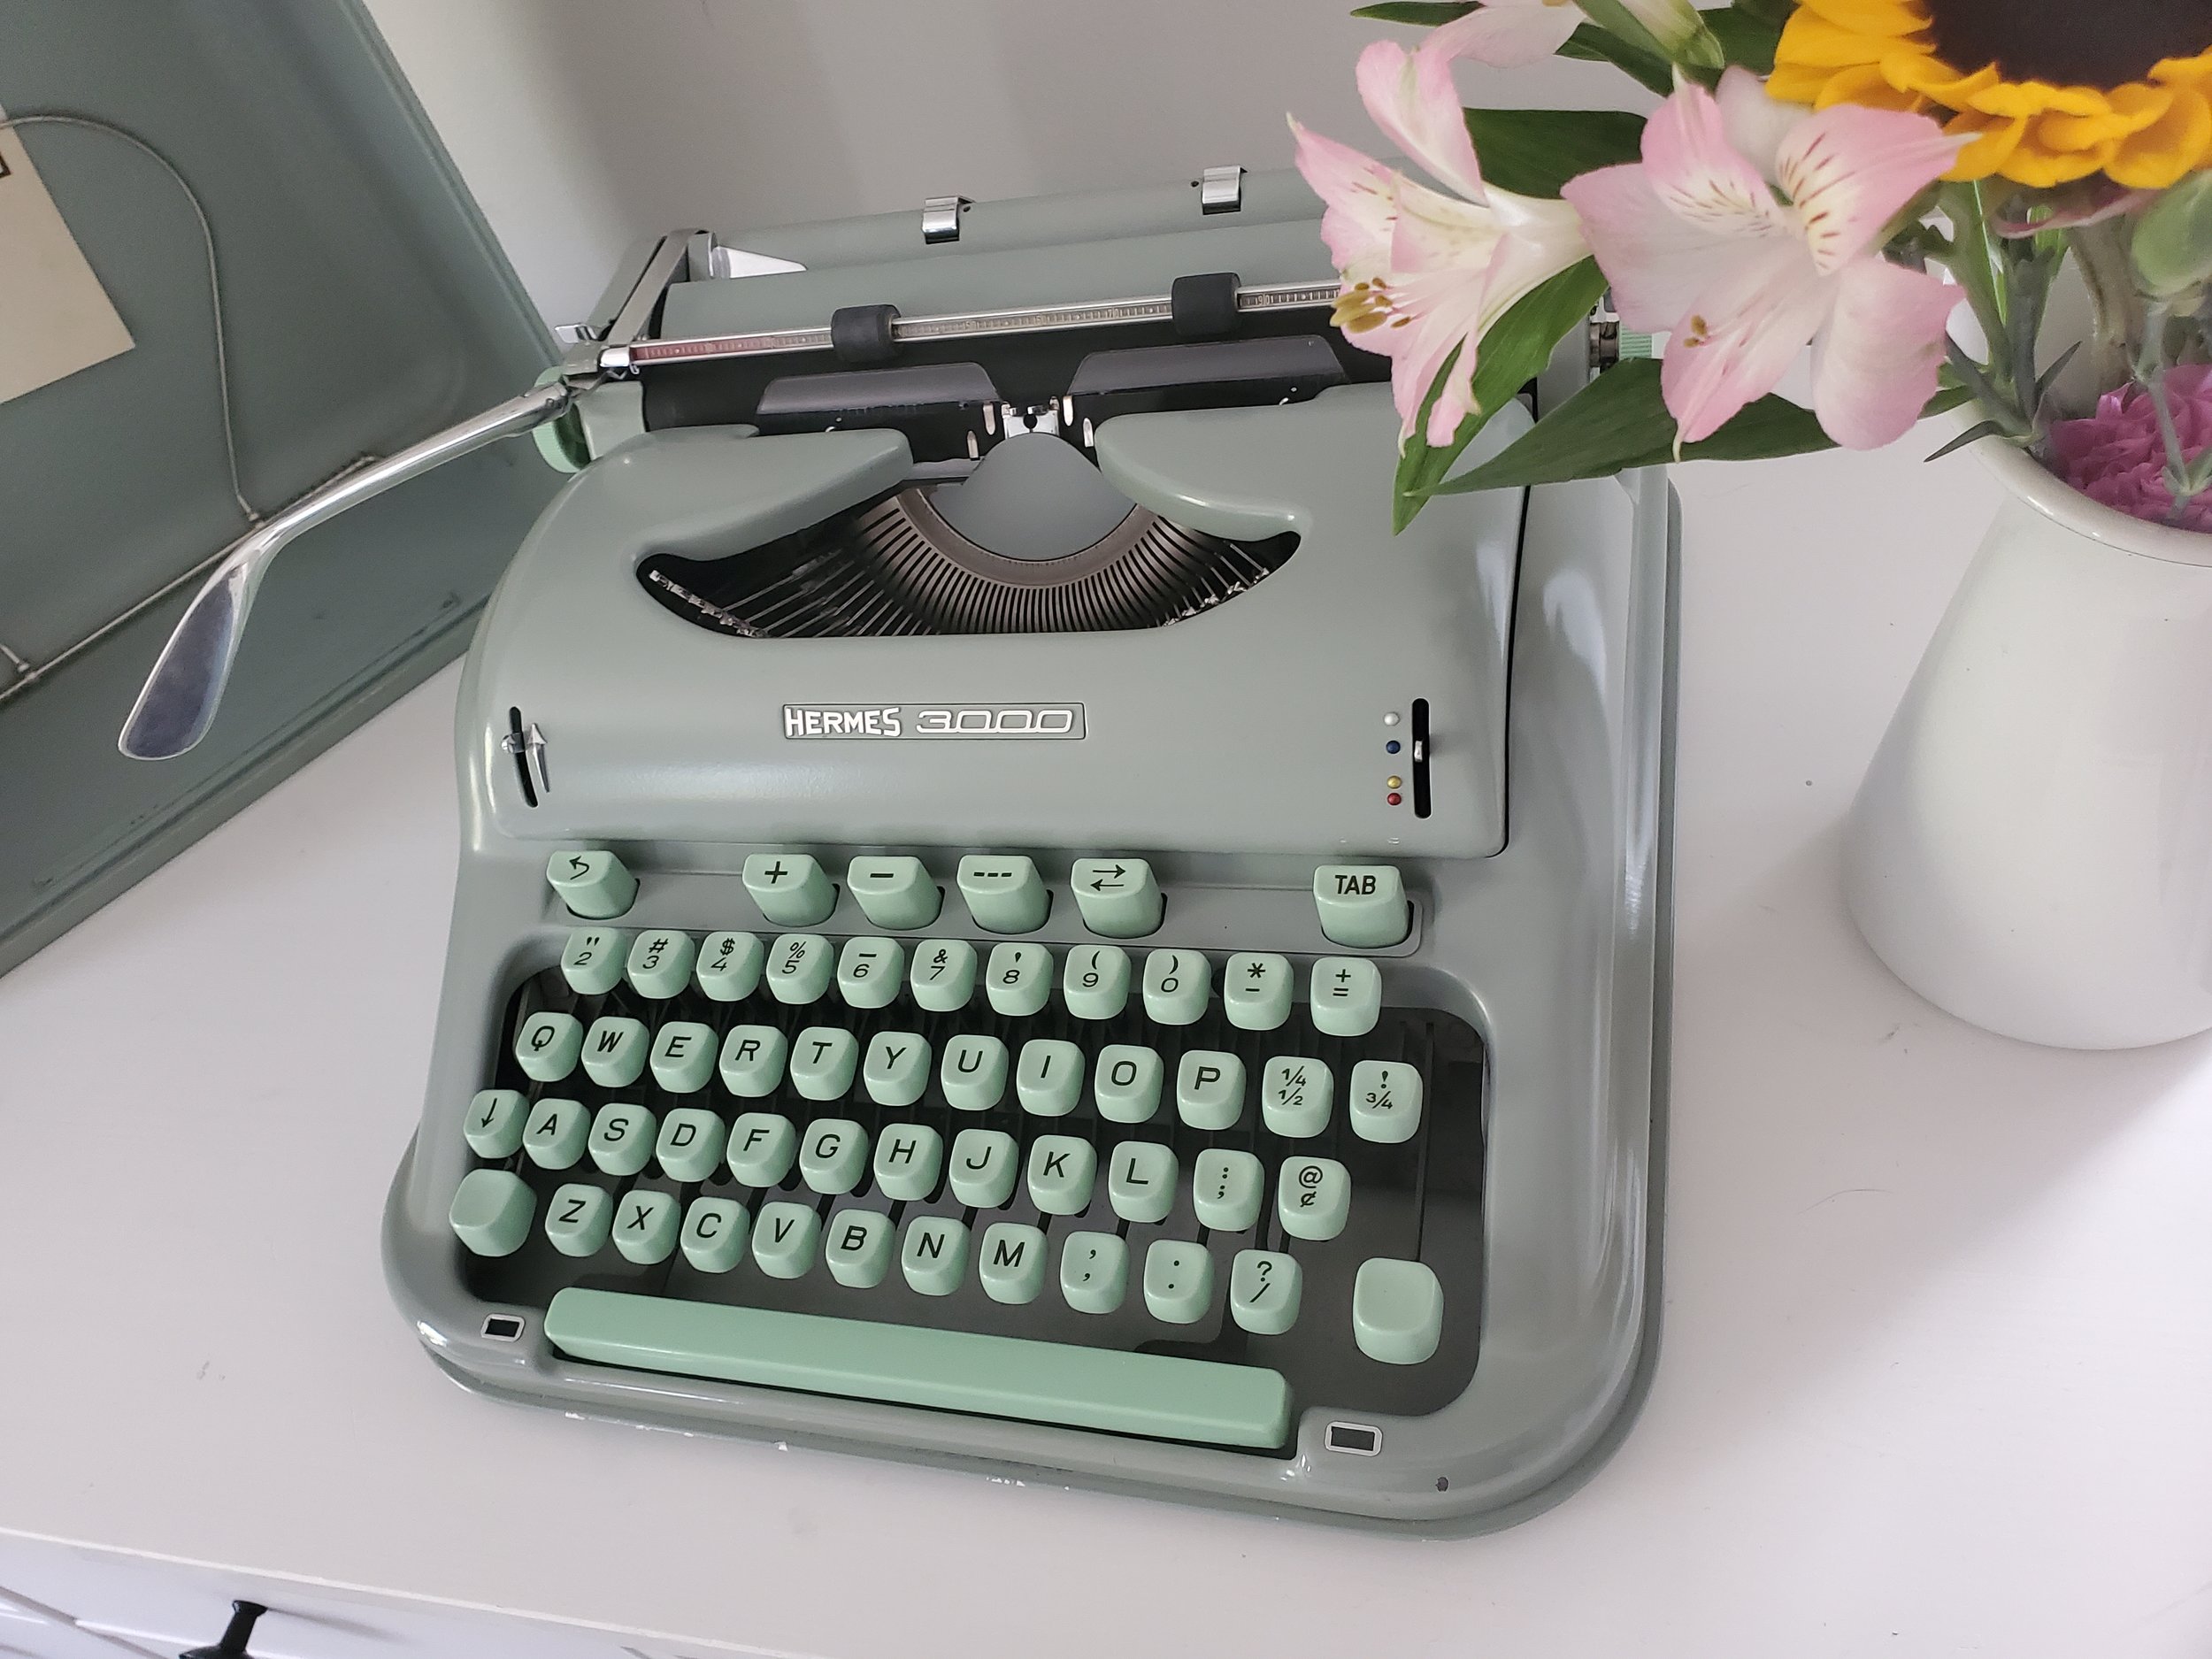 Cursive Hermes 3000 (script) : r/typewriters